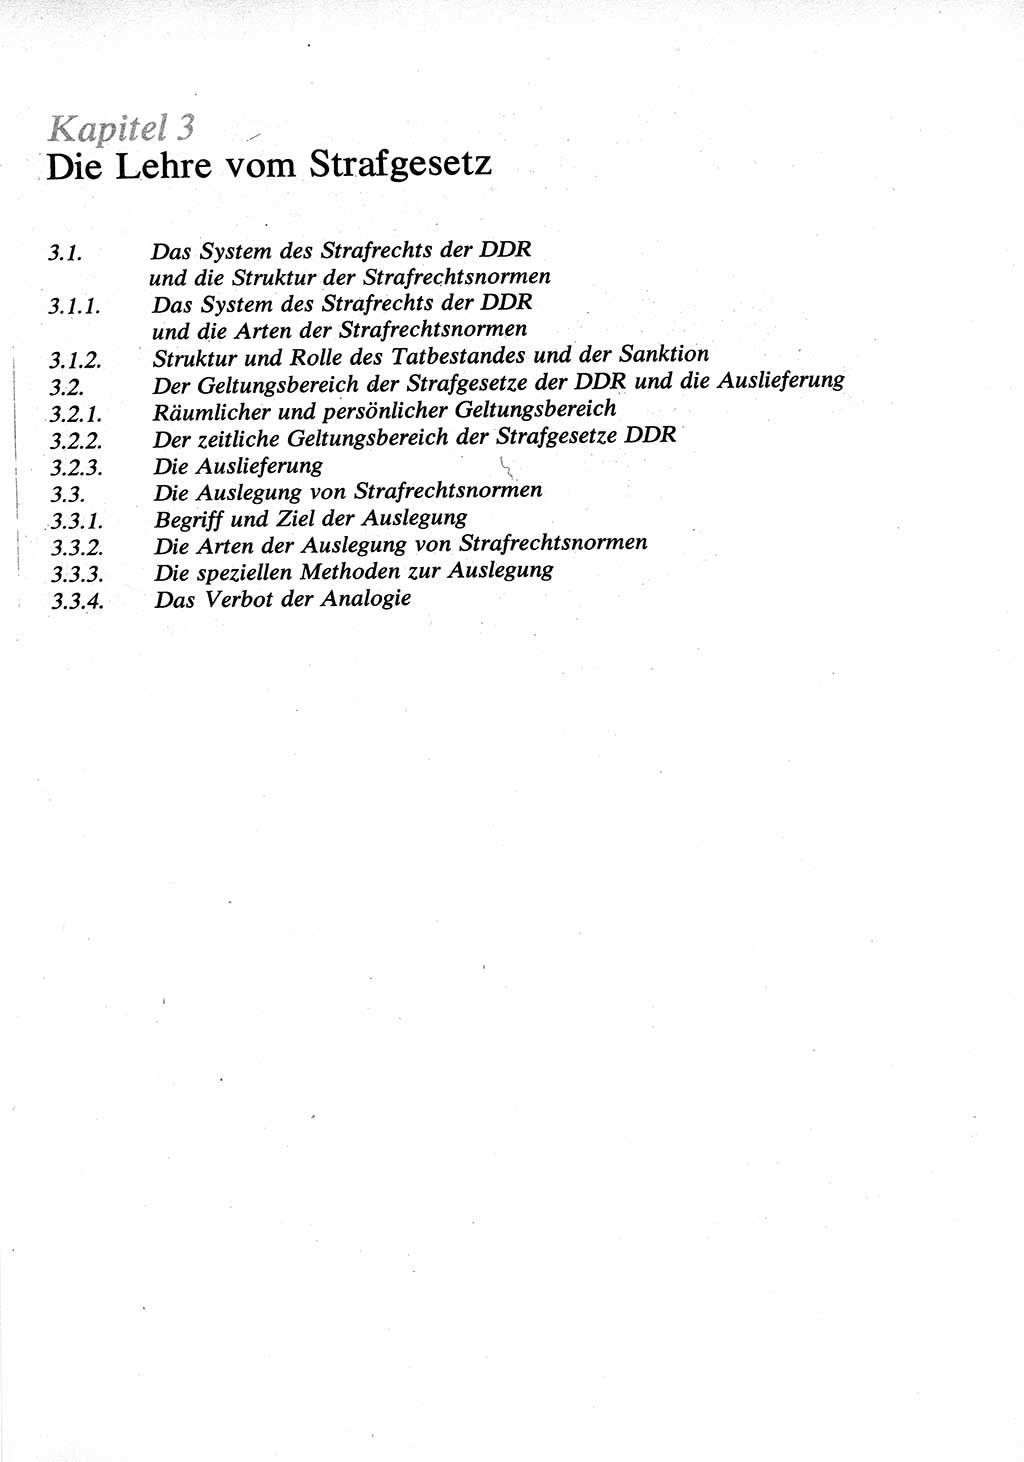 Strafrecht [Deutsche Demokratische Republik (DDR)], Allgemeiner Teil, Lehrbuch 1976, Seite 121 (Strafr. DDR AT Lb. 1976, S. 121)